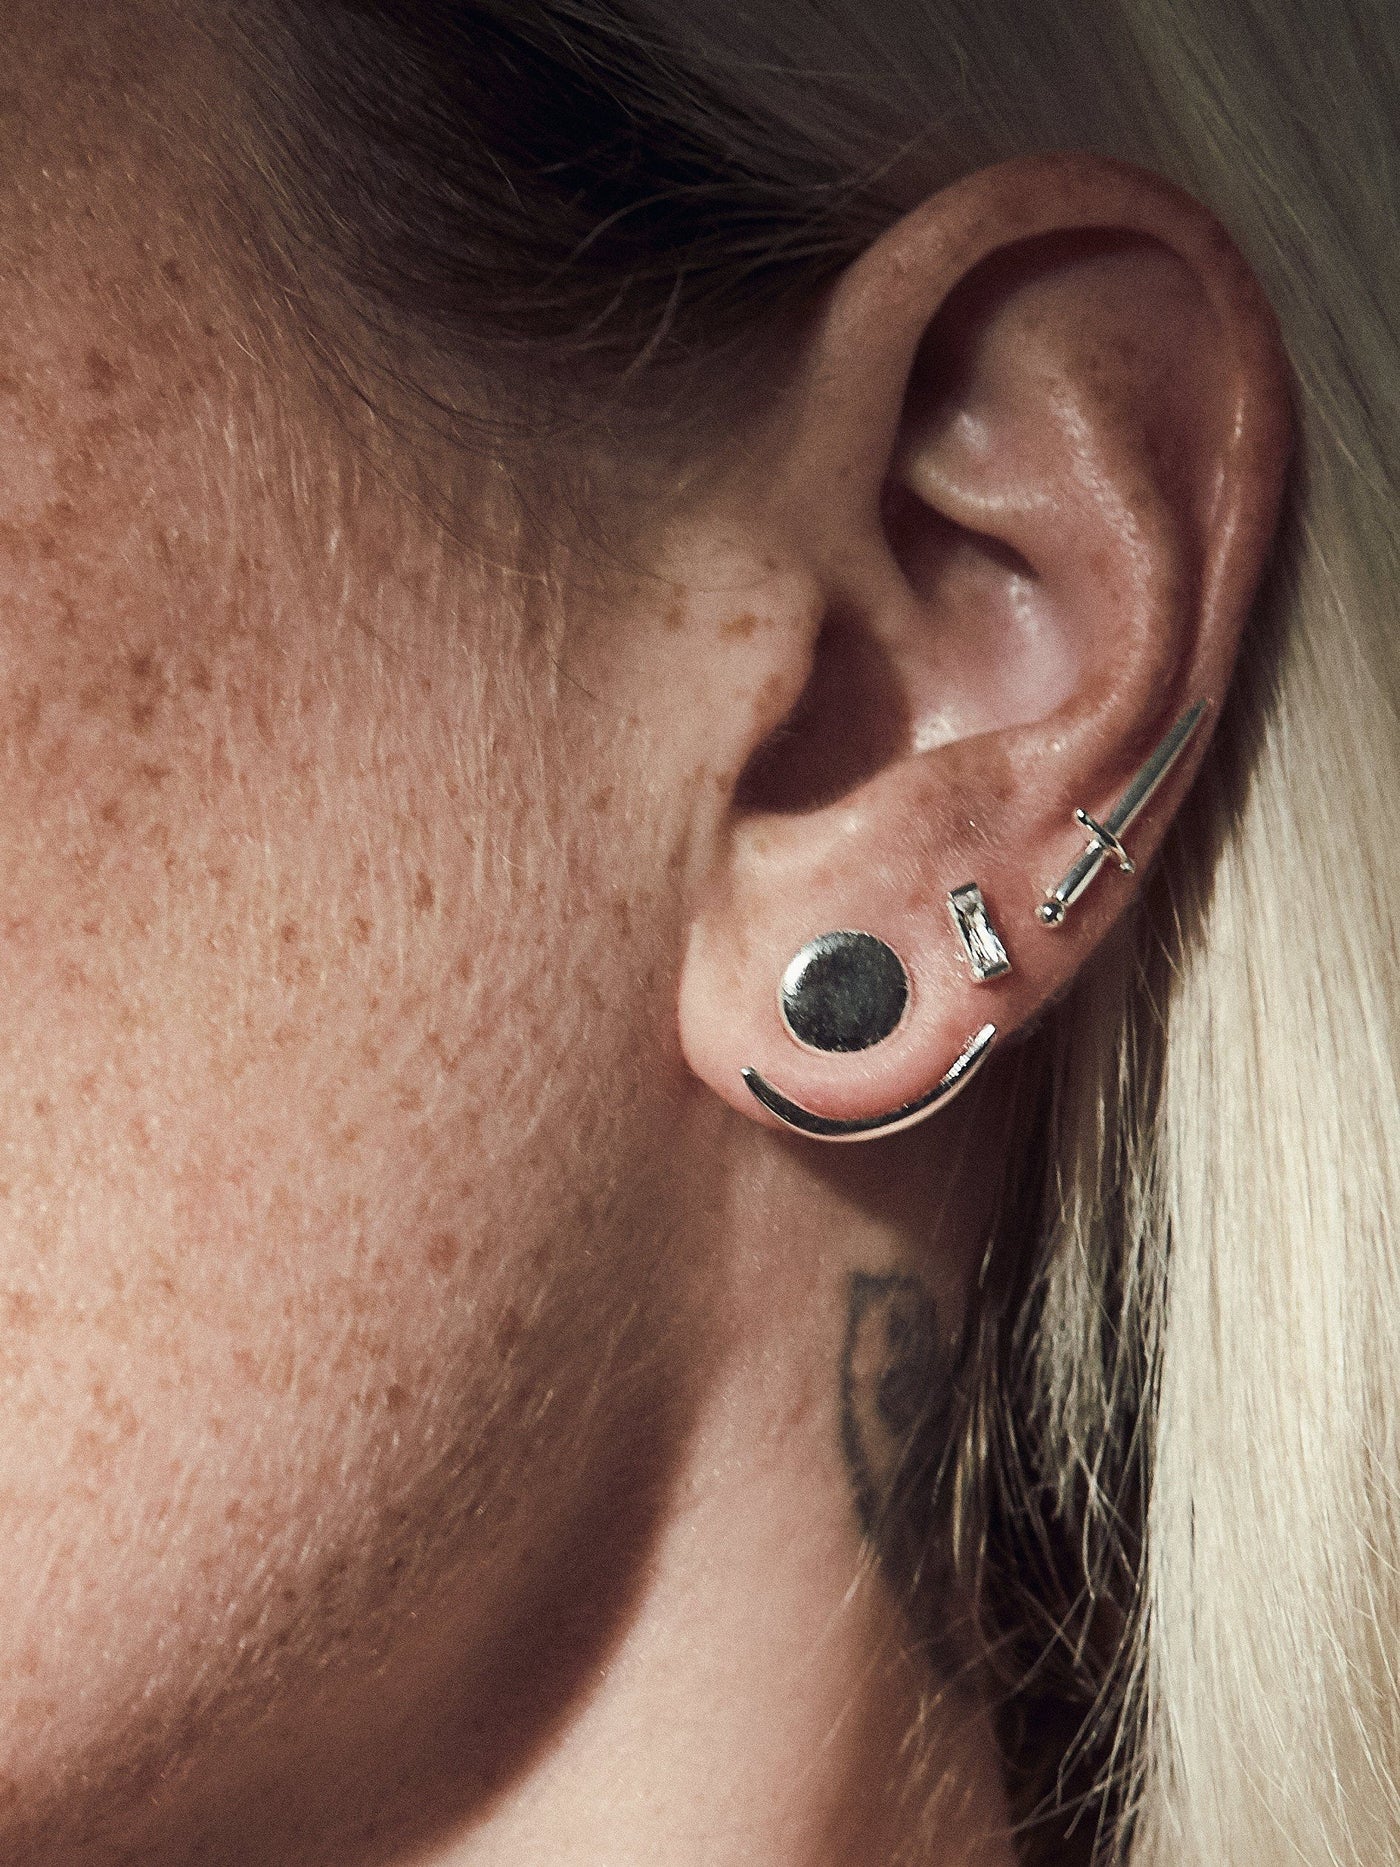 Moon Phase Earrings - Ear Jacket earrings - Front Back Earrings - Floating Earring -  Celestial Jewelry Earring - EJK008